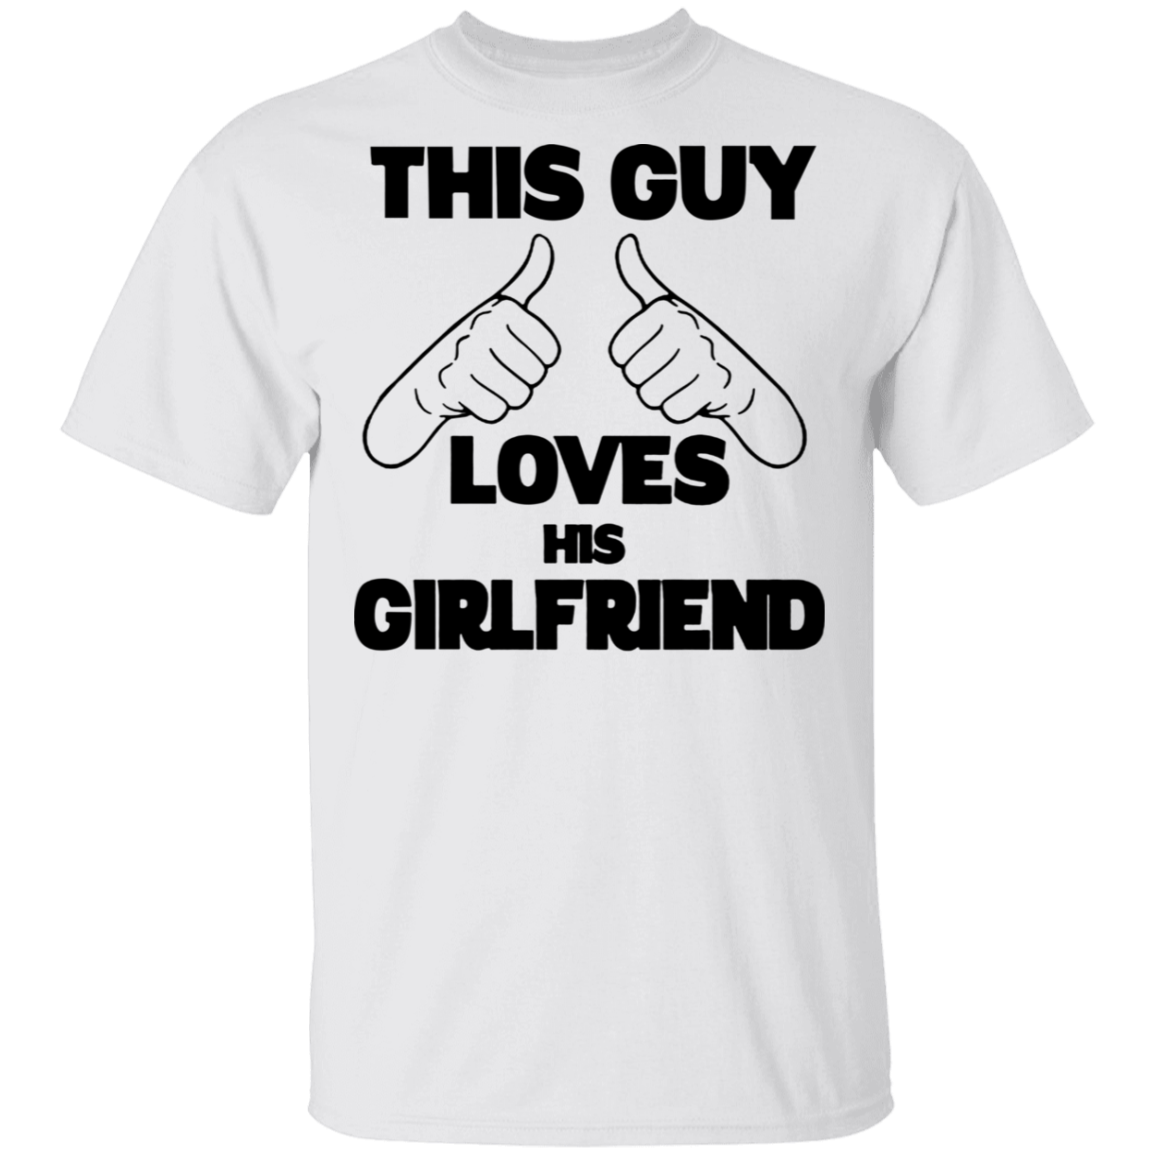 i-love-my-girlfriend-shirt-funny-this-guy-love-his-girlfriend-t-shirt-for-men-gift-teenidi-store